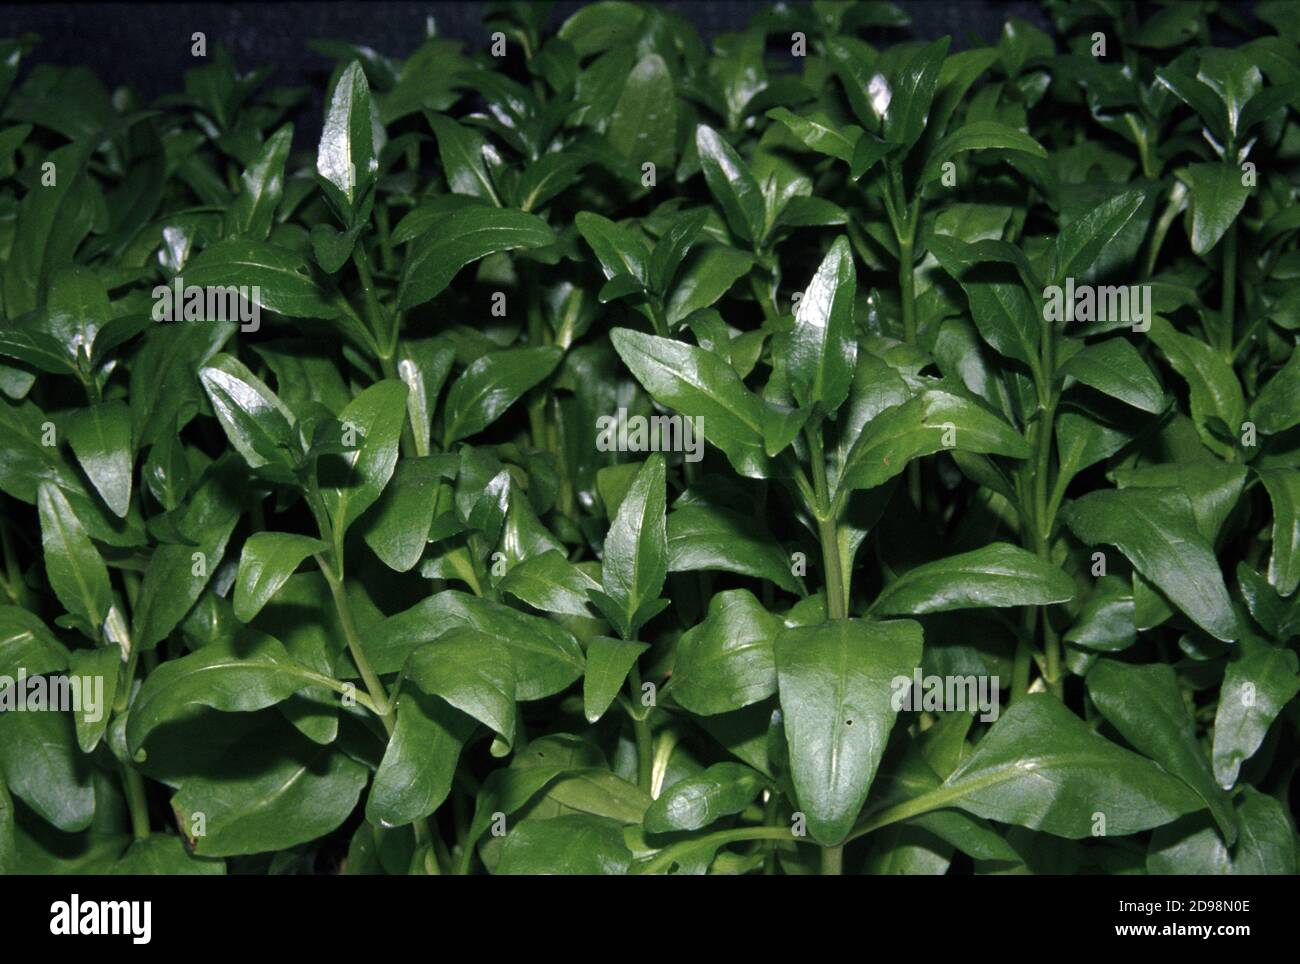 Senegal tea plant (Gymnocoronis spilanthoides) Stock Photo